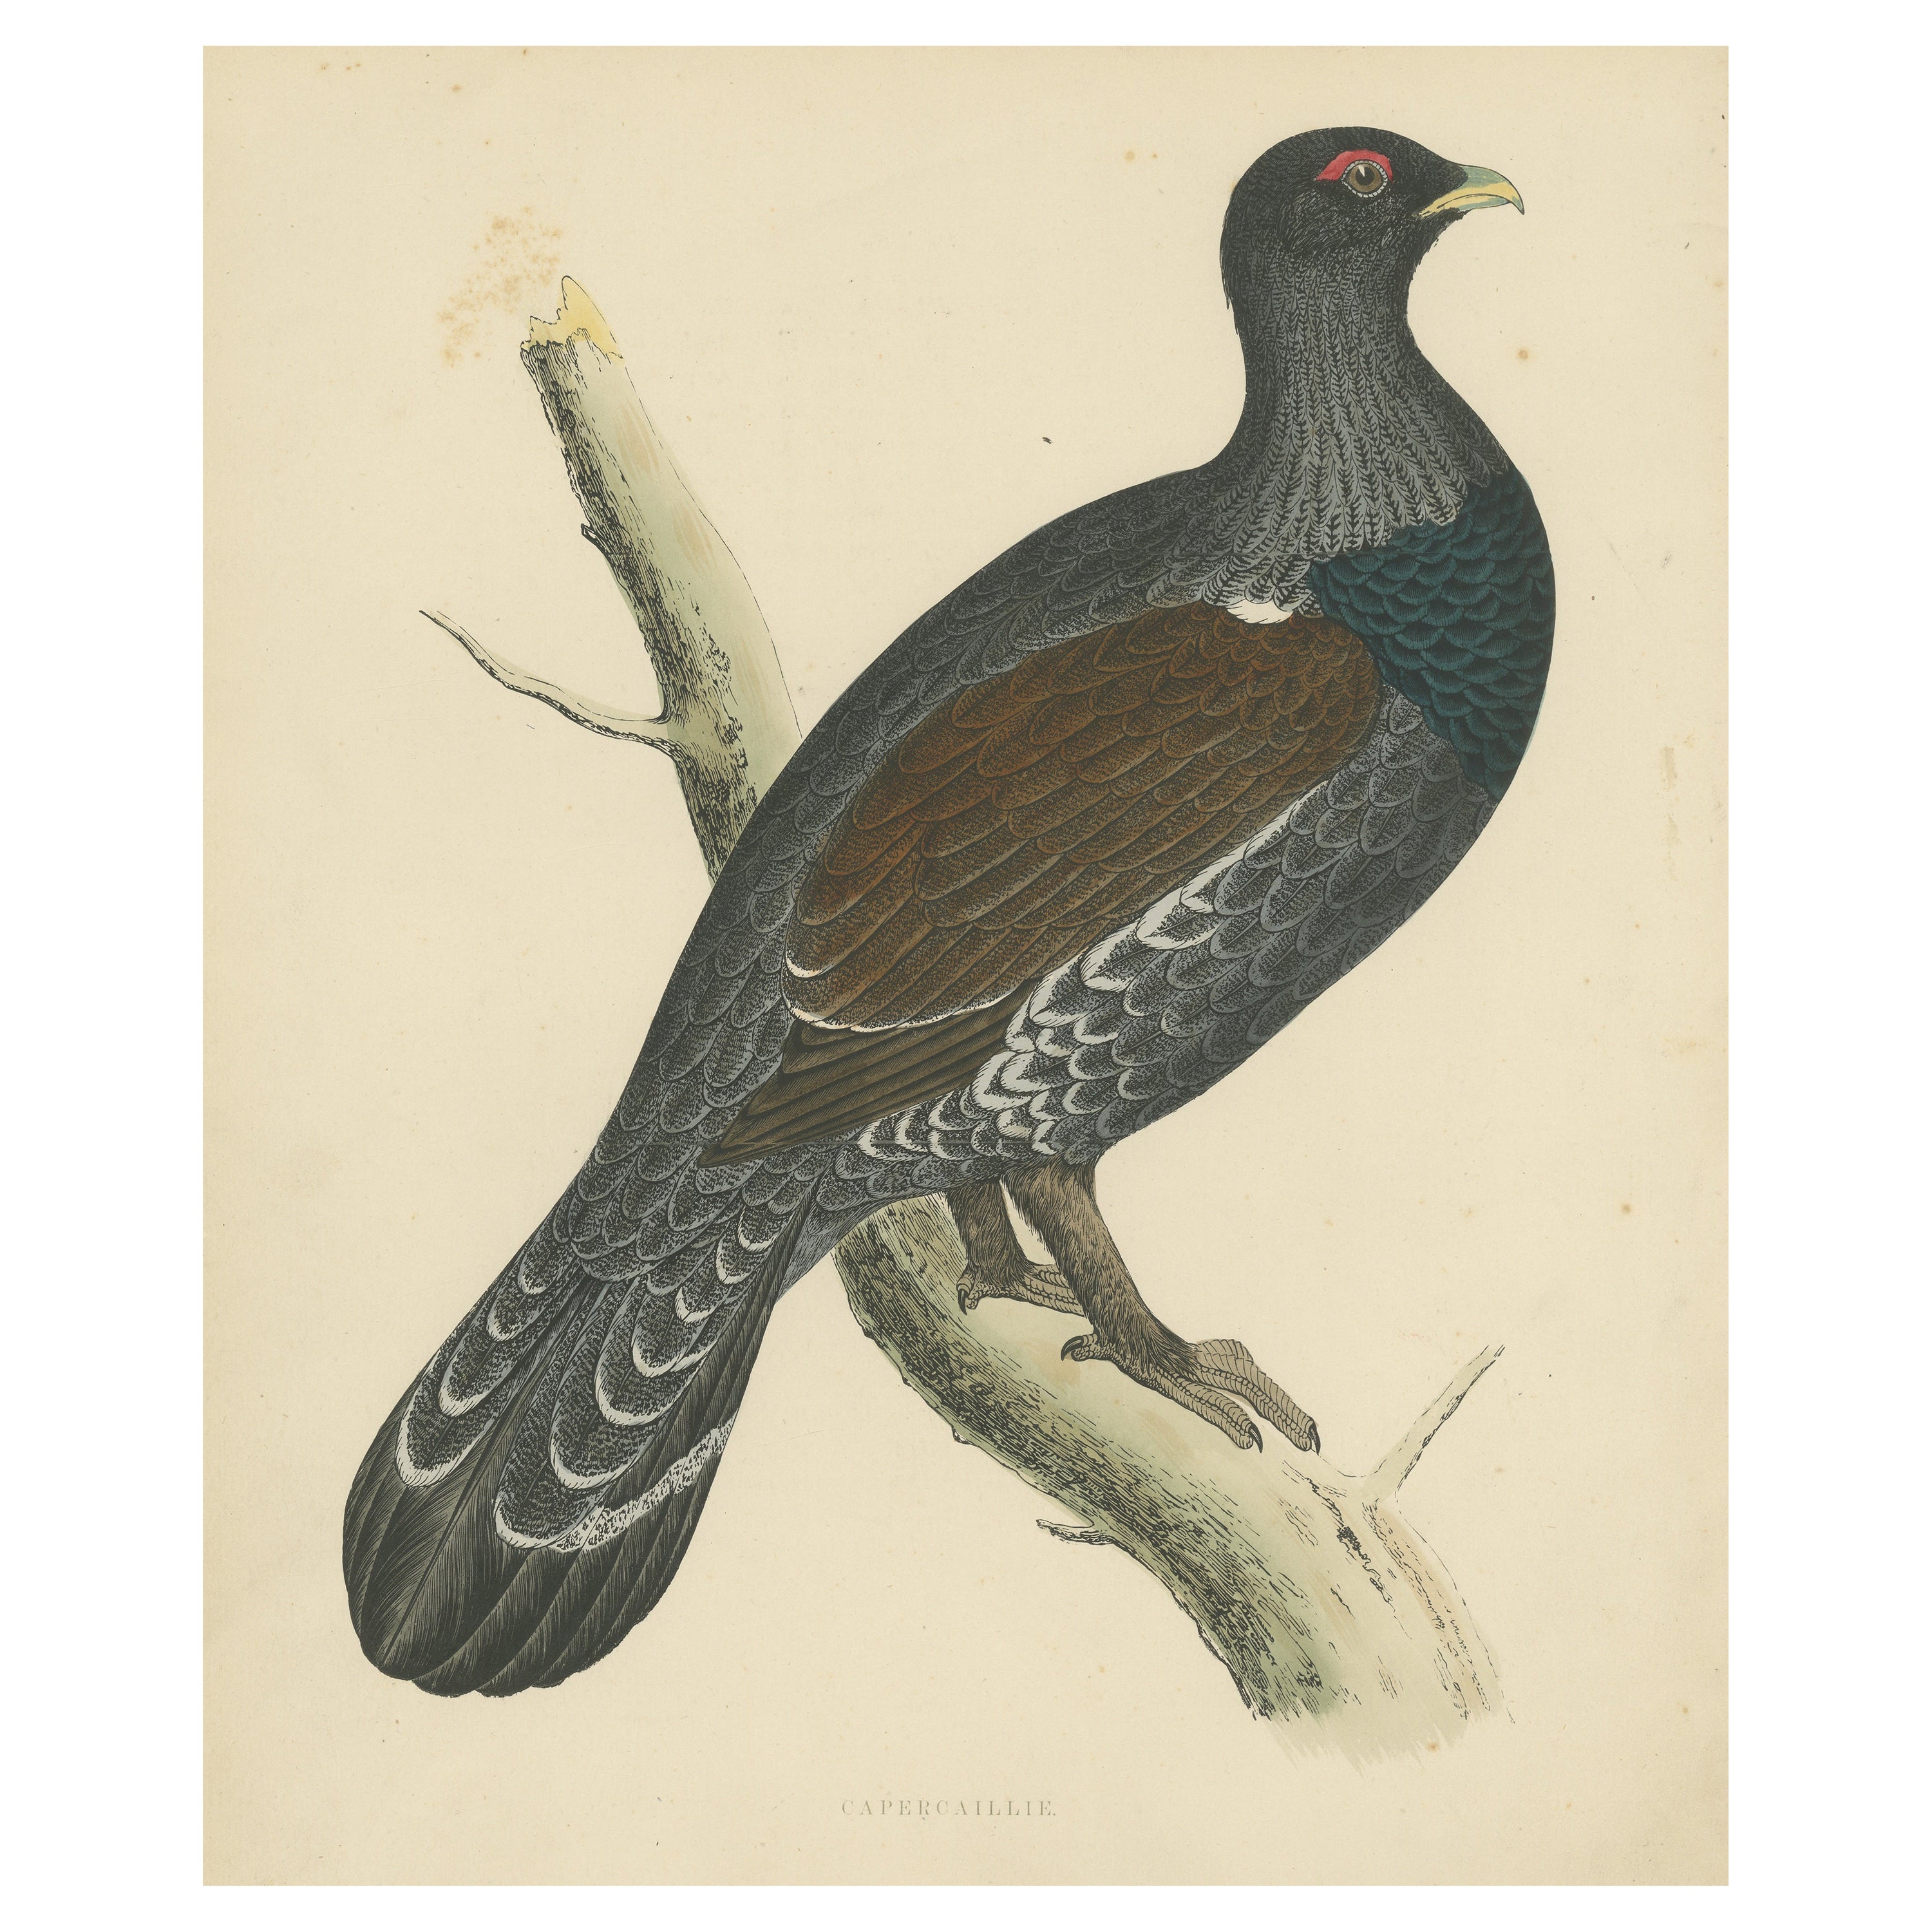 Original Antique Print of a Capercaillie Bird For Sale